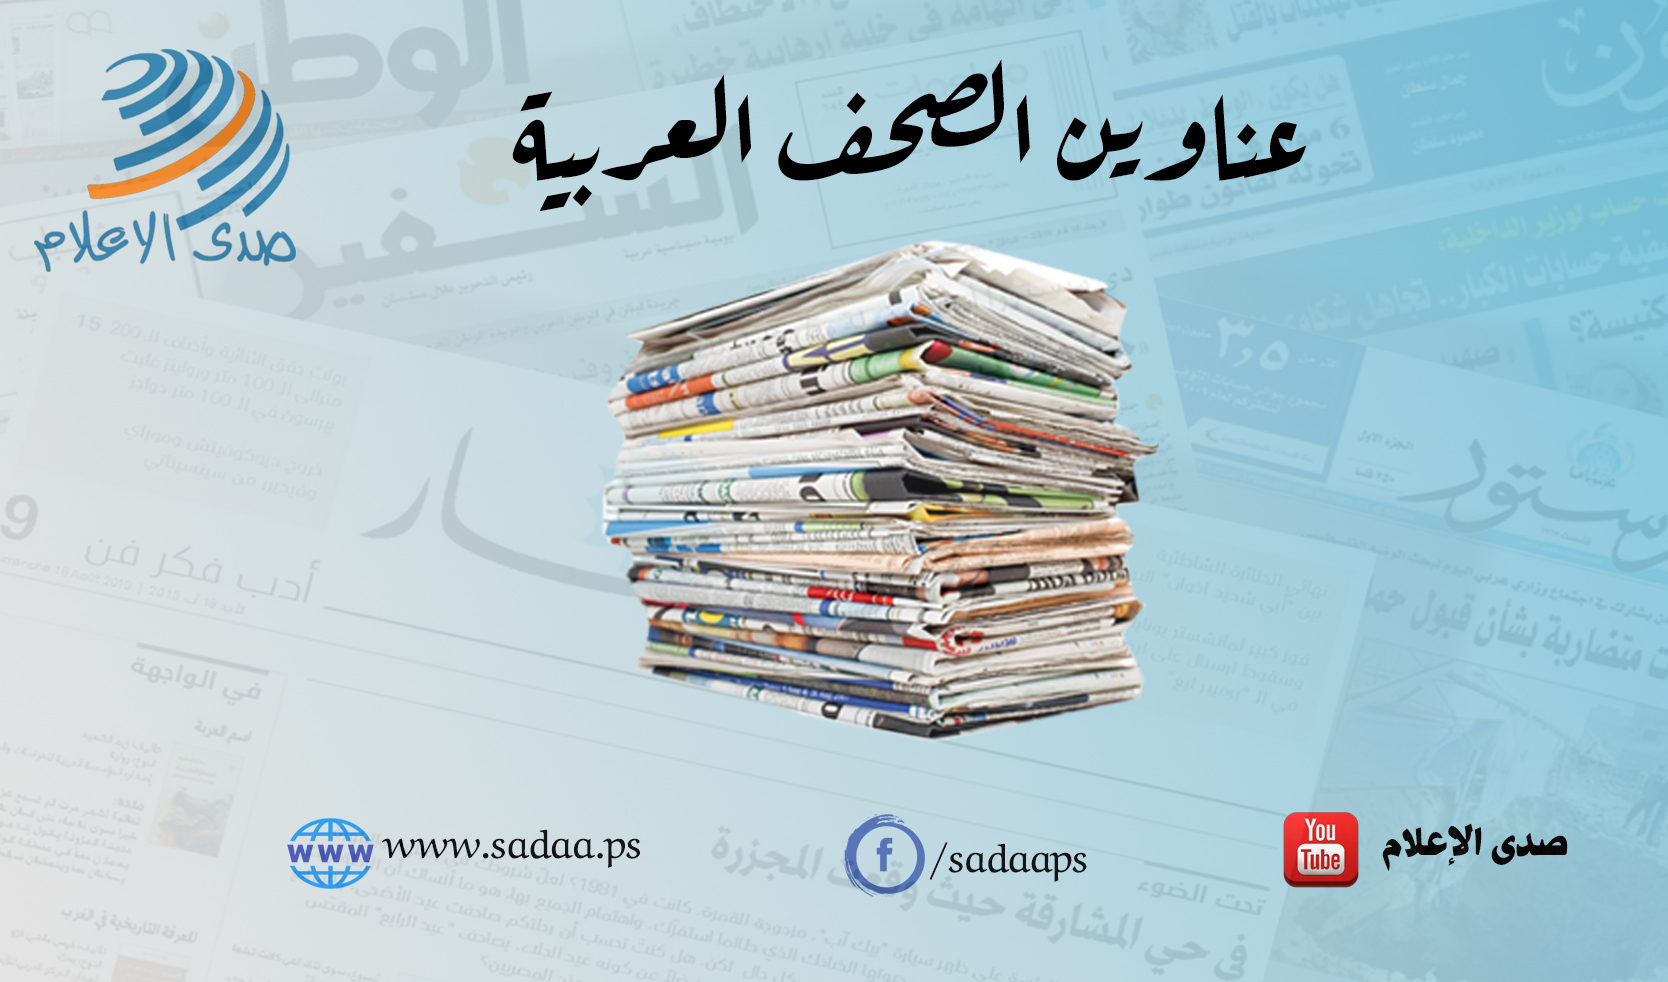 أبرز عناوين الصحف العربية ليوم الإثنين 27/5/2019